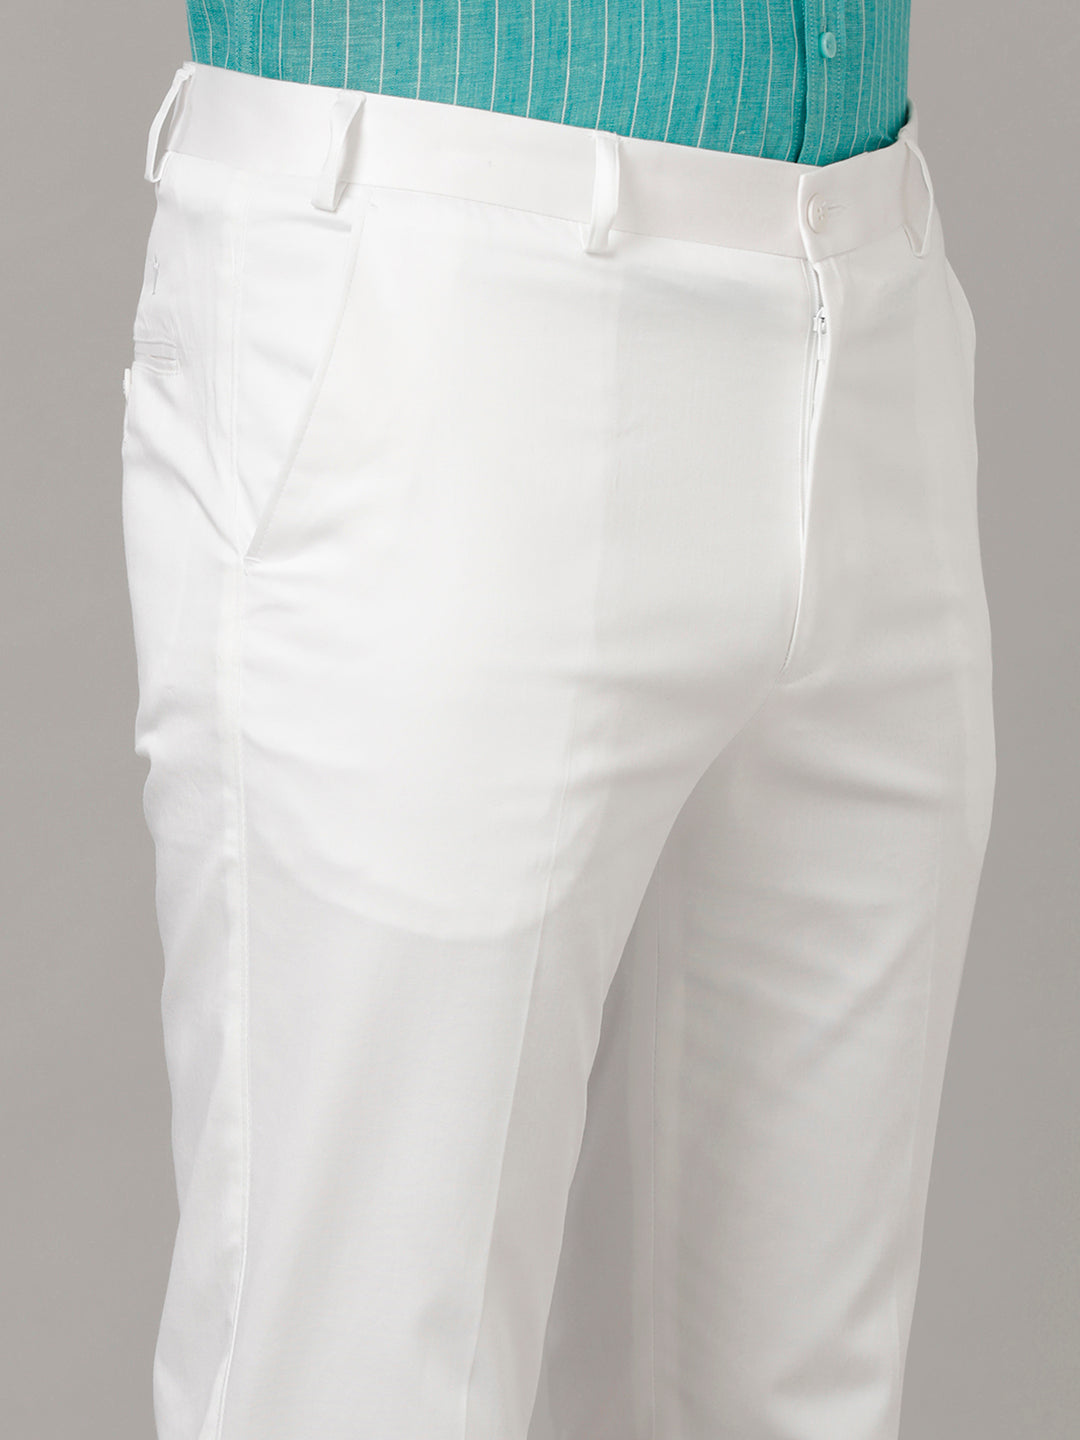 Off-white trousers | Calça branca masculina, Estilo masculino, Calça branca